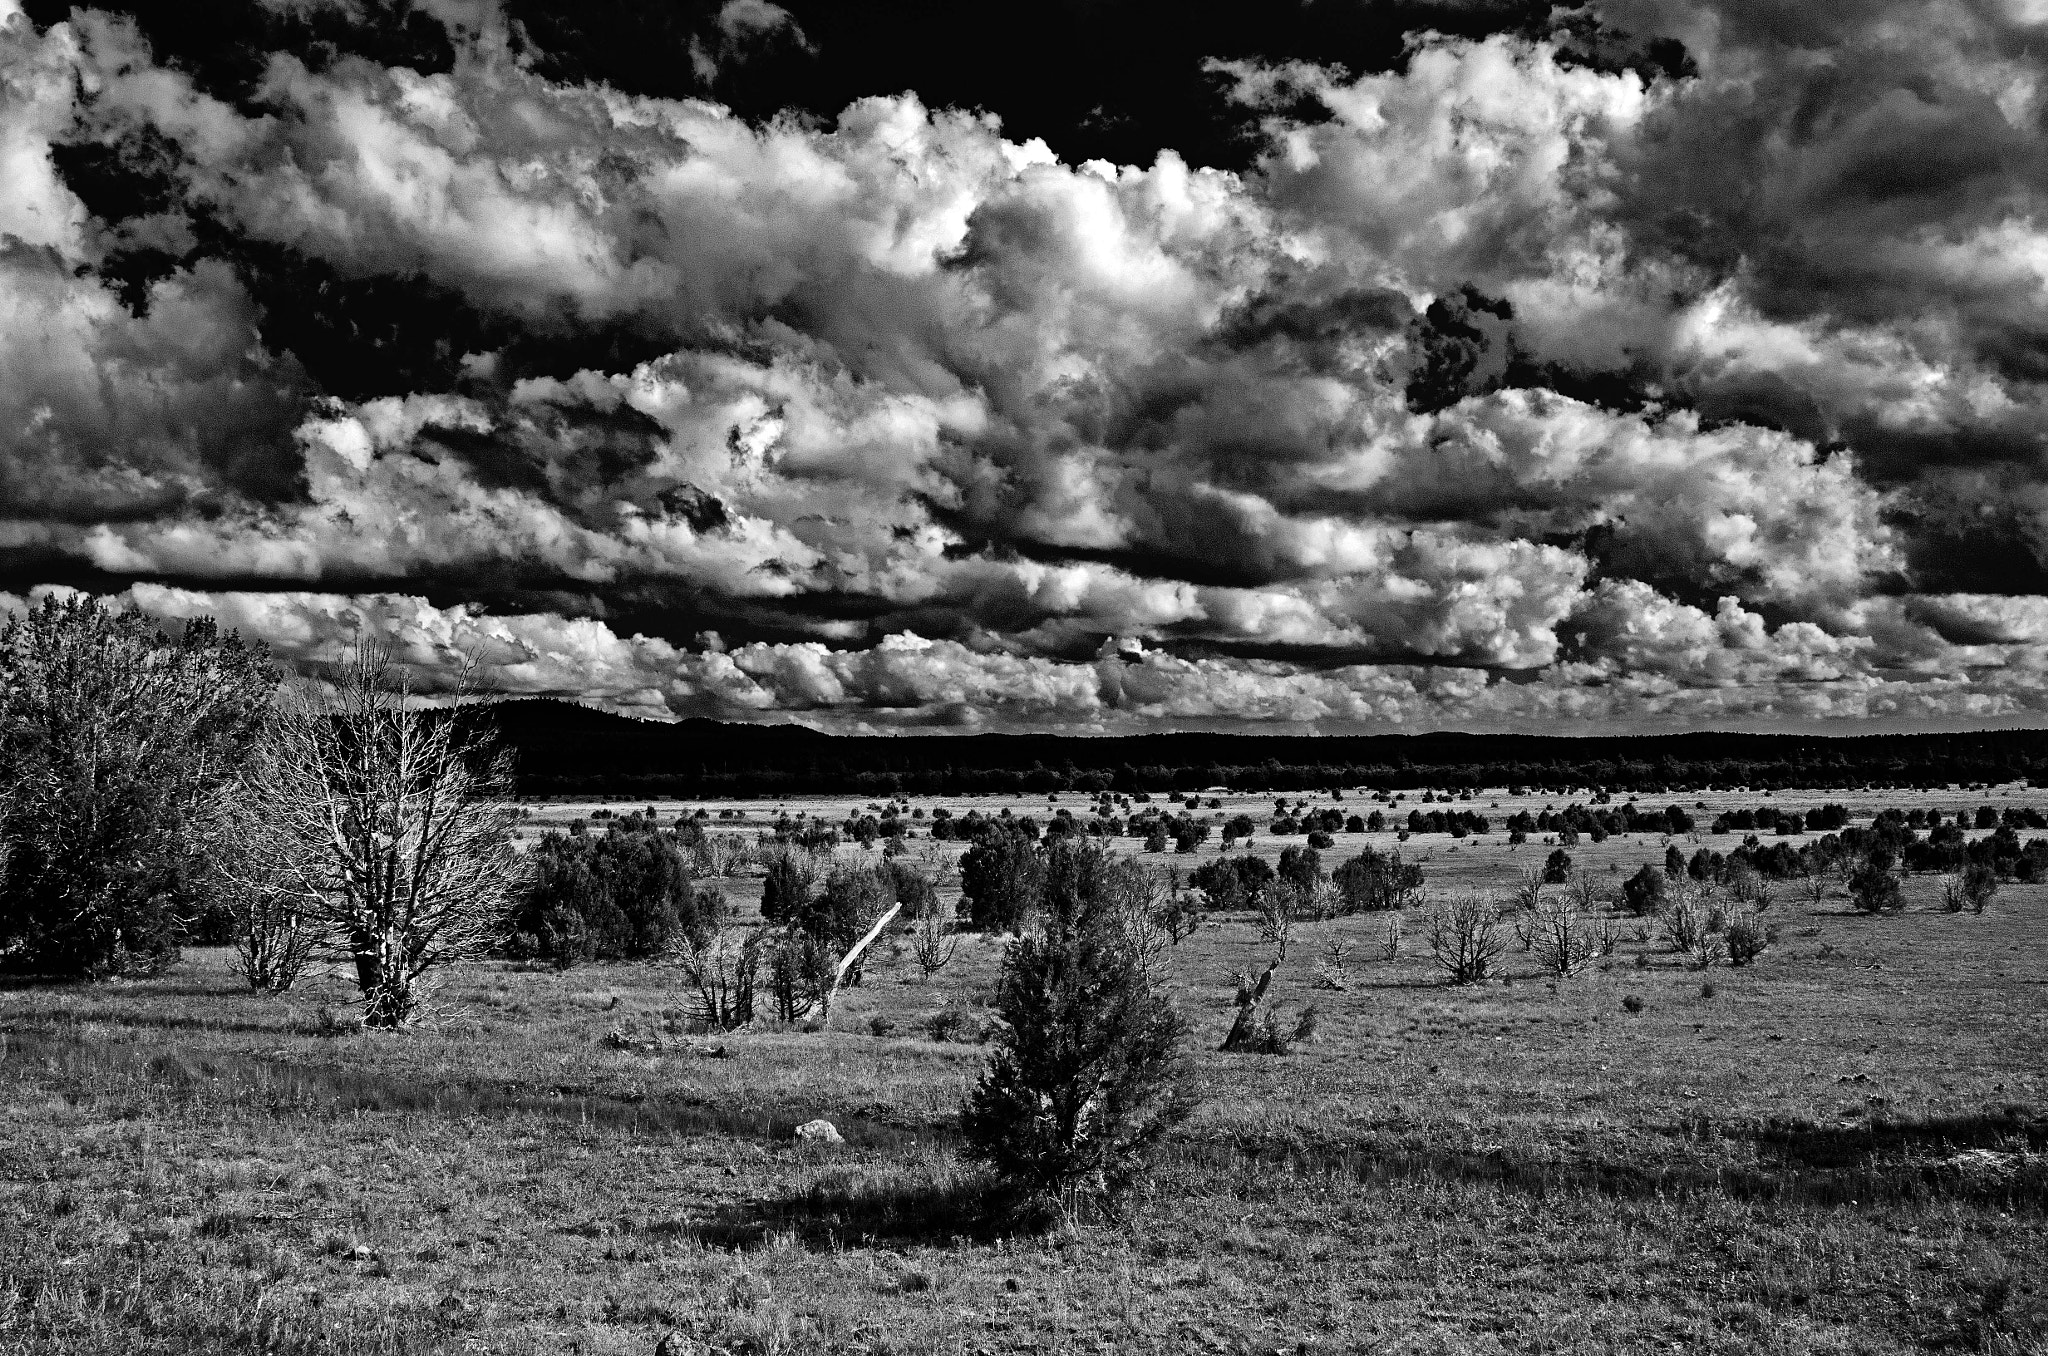 Nikon D7000 + Tamron SP AF 24-135mm f/3.5-5.6 AD Aspherical (IF) Macro (190D) sample photo. Timber mesa meadows b&w photography